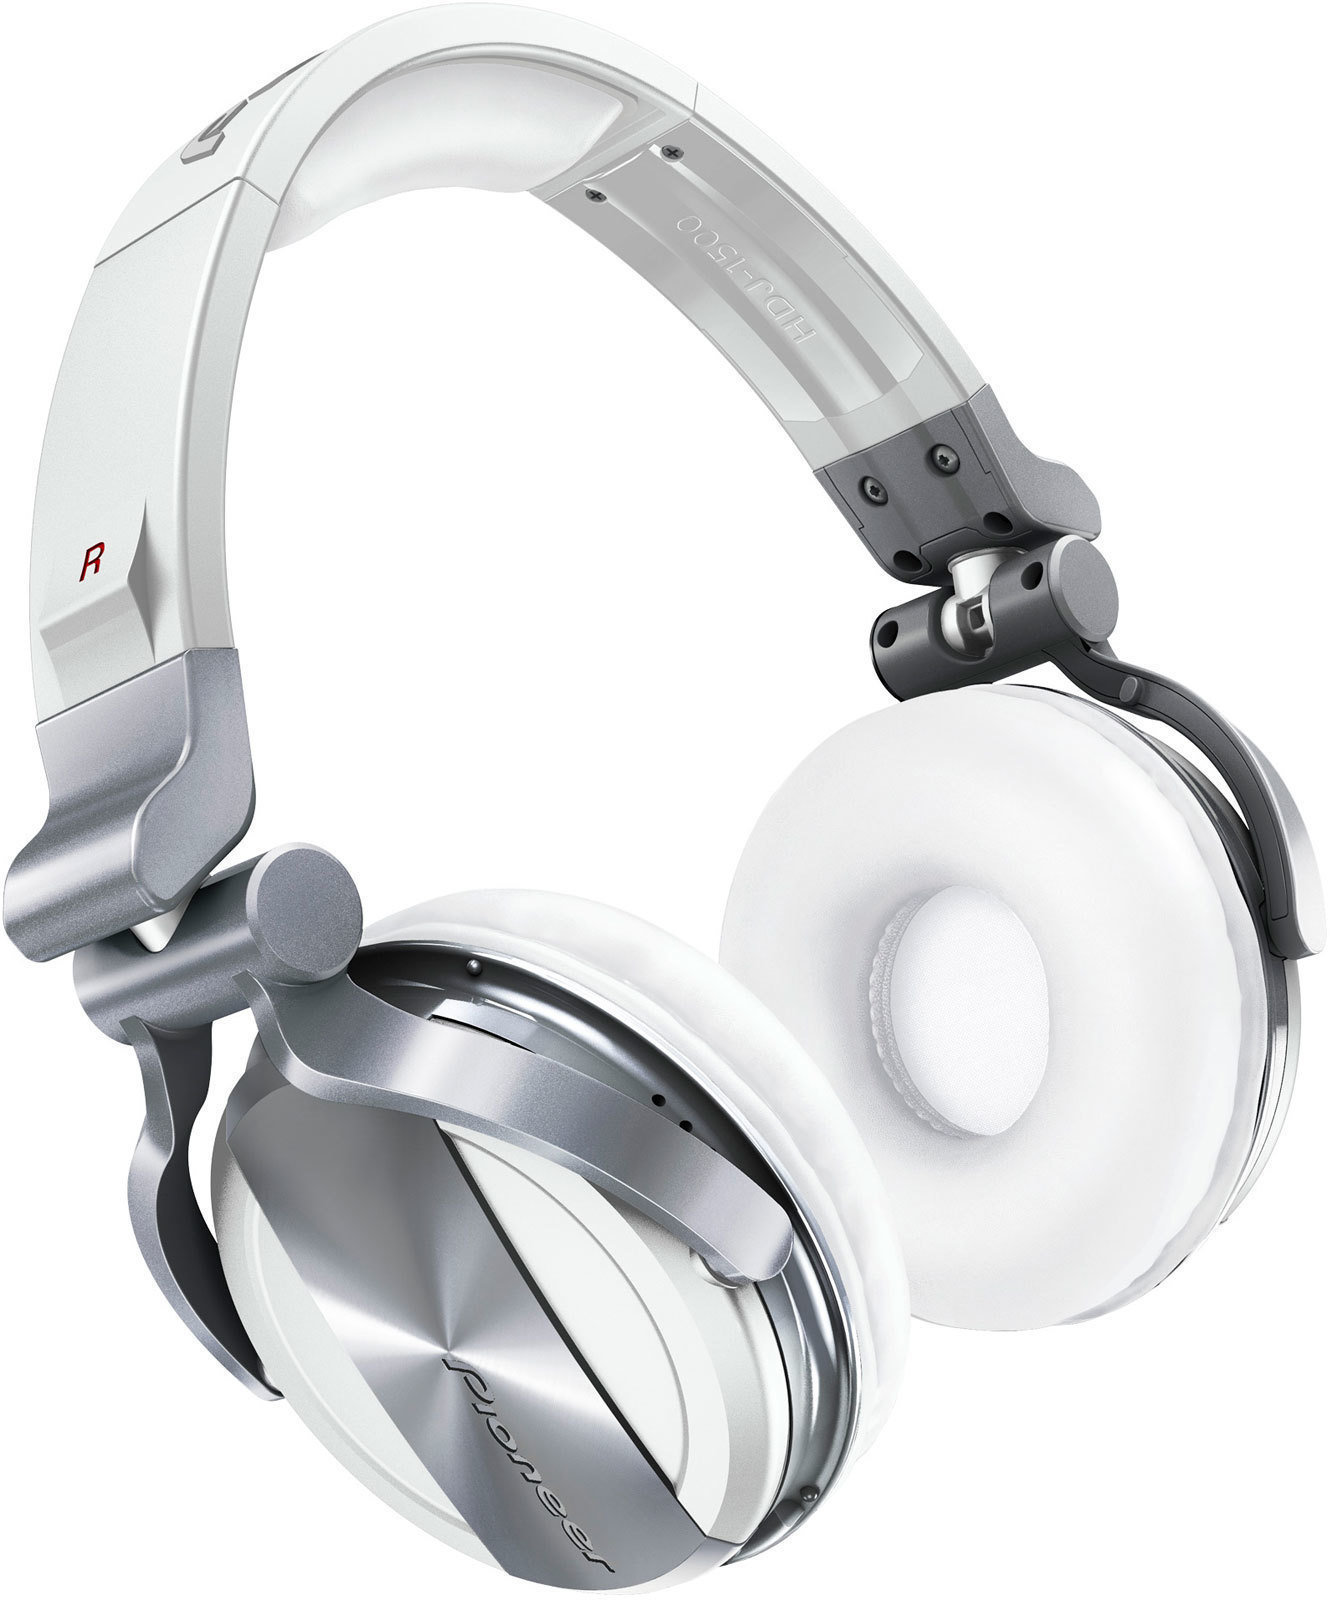 Dj slušalice Pioneer Dj HDJ-1500 White